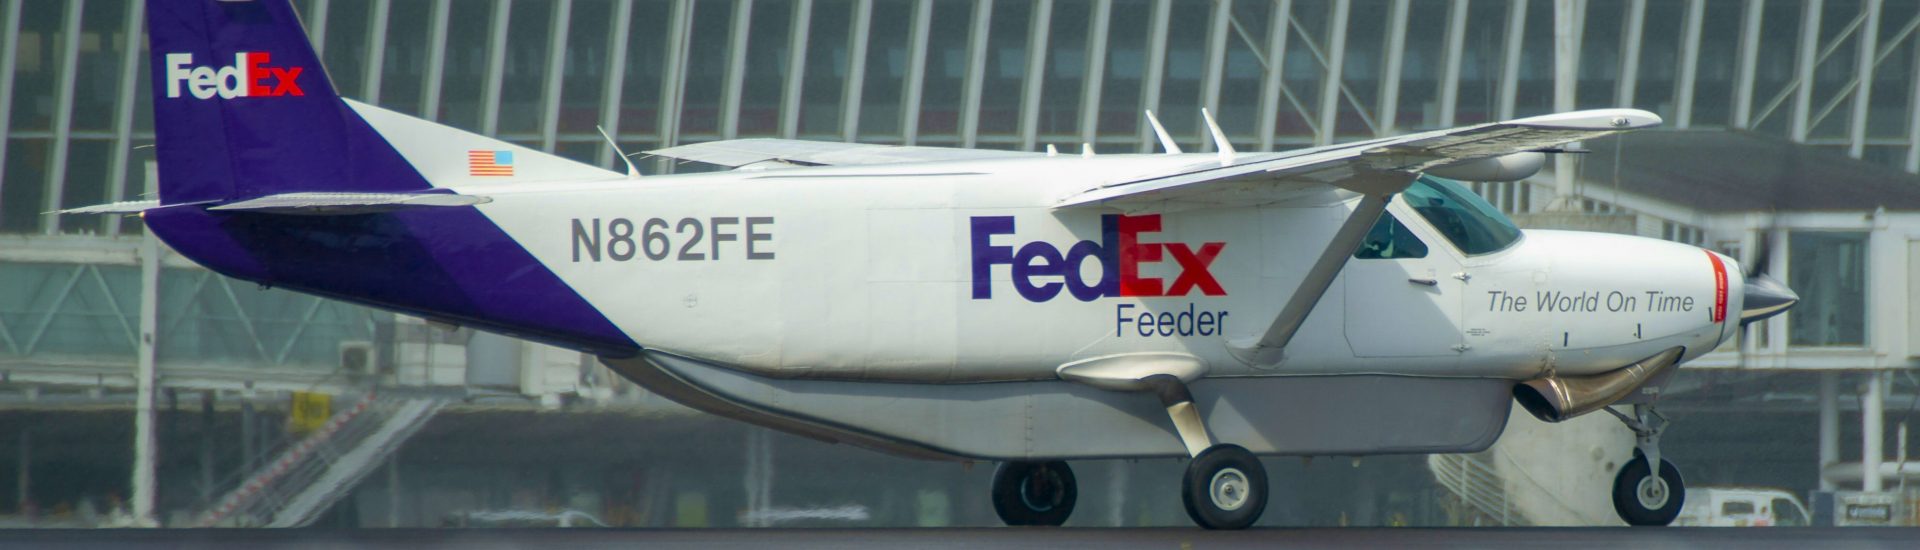 Cessna 208B Fedex Feeder N862FE